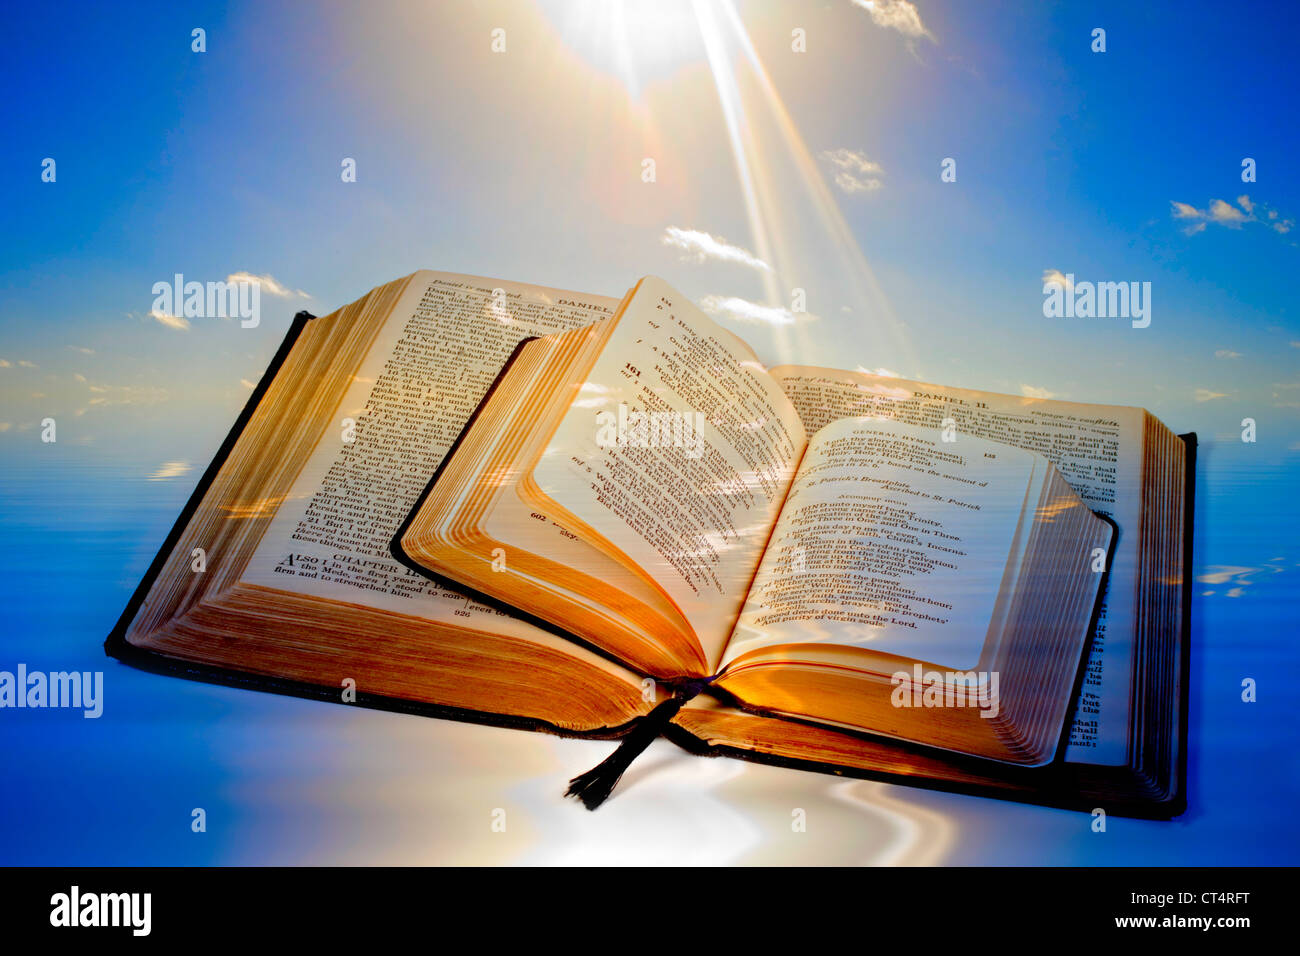 Heilige Bibel und Gebet-Buch, öffnen Sie beide mit einem Hintergrund von Lichtstrahlen auffällig Seite. Stockfoto